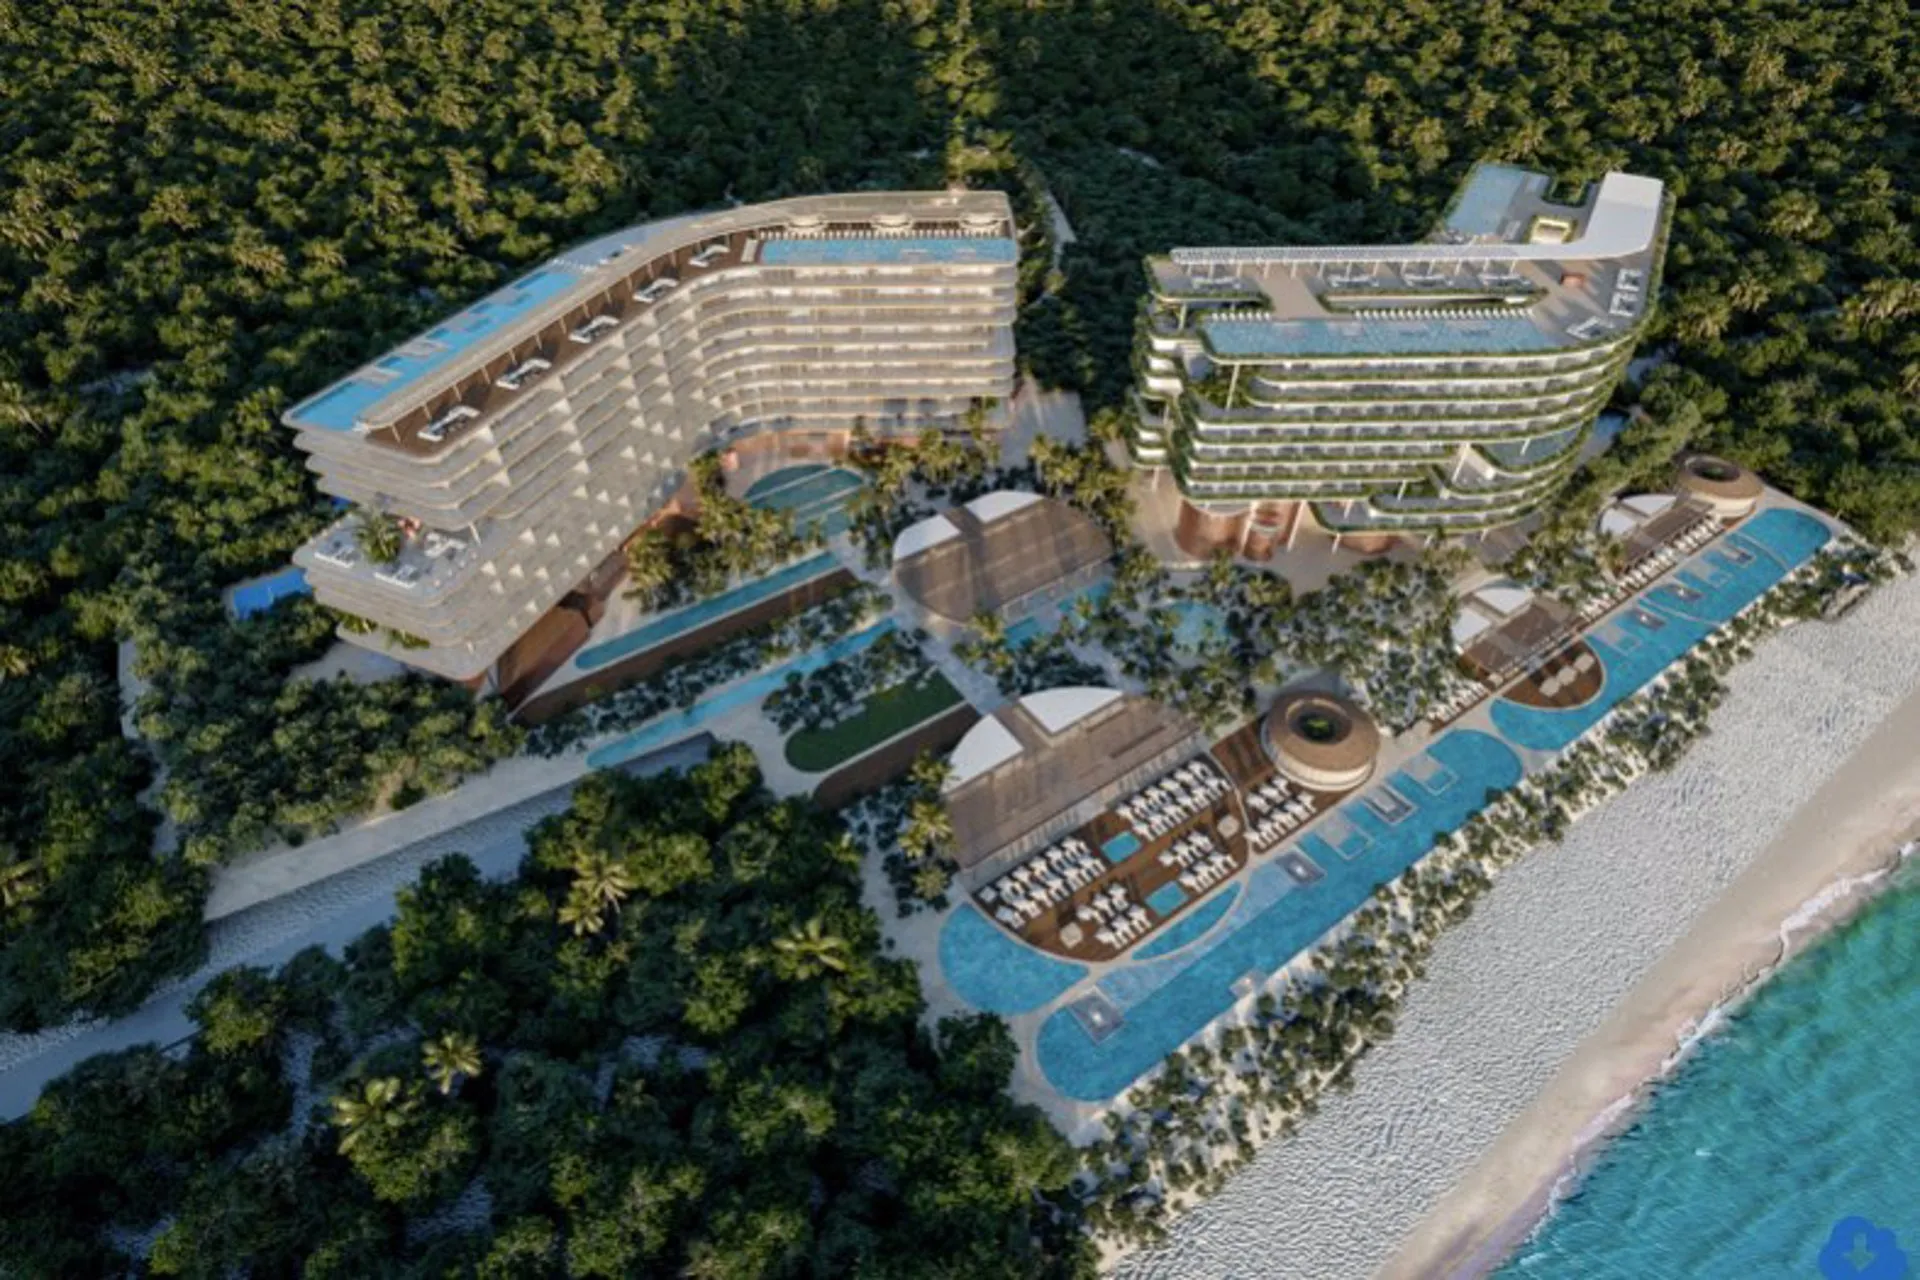 Marriot abrirá 3 resorts de lujo All Inclusive en Mexico